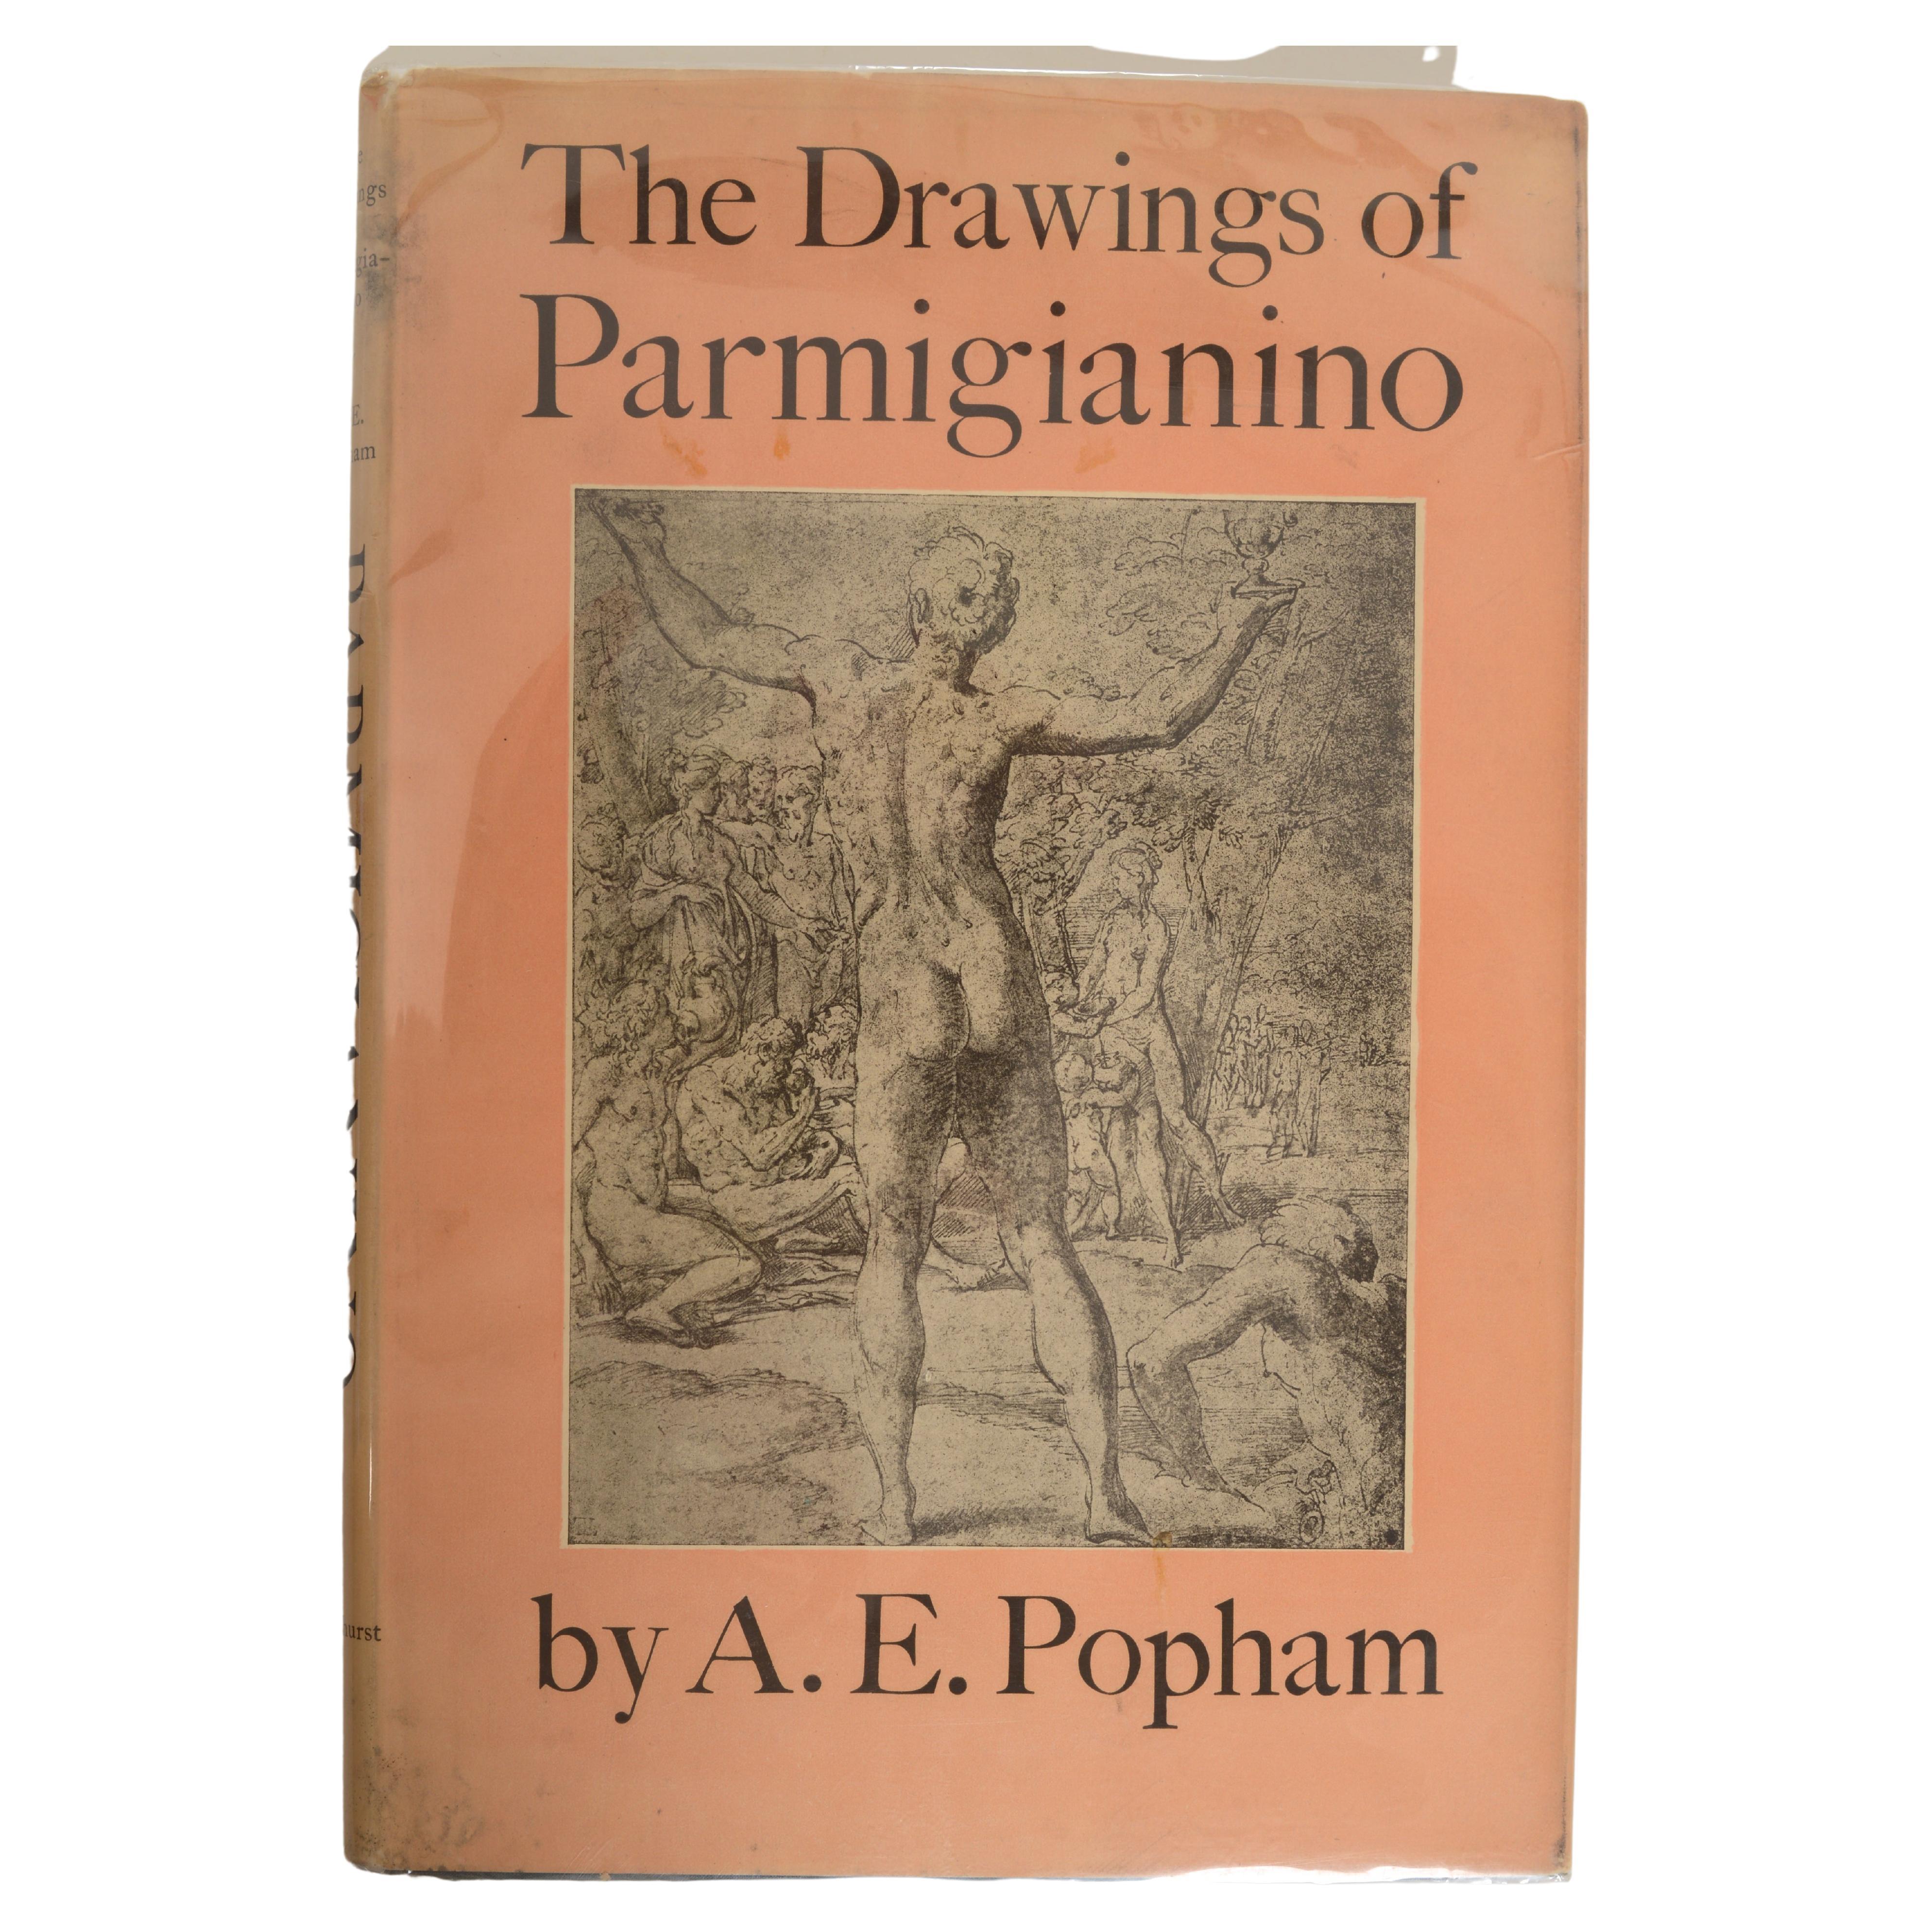 Dessins de Parmigianino par a. E. Popham, 1ère édition